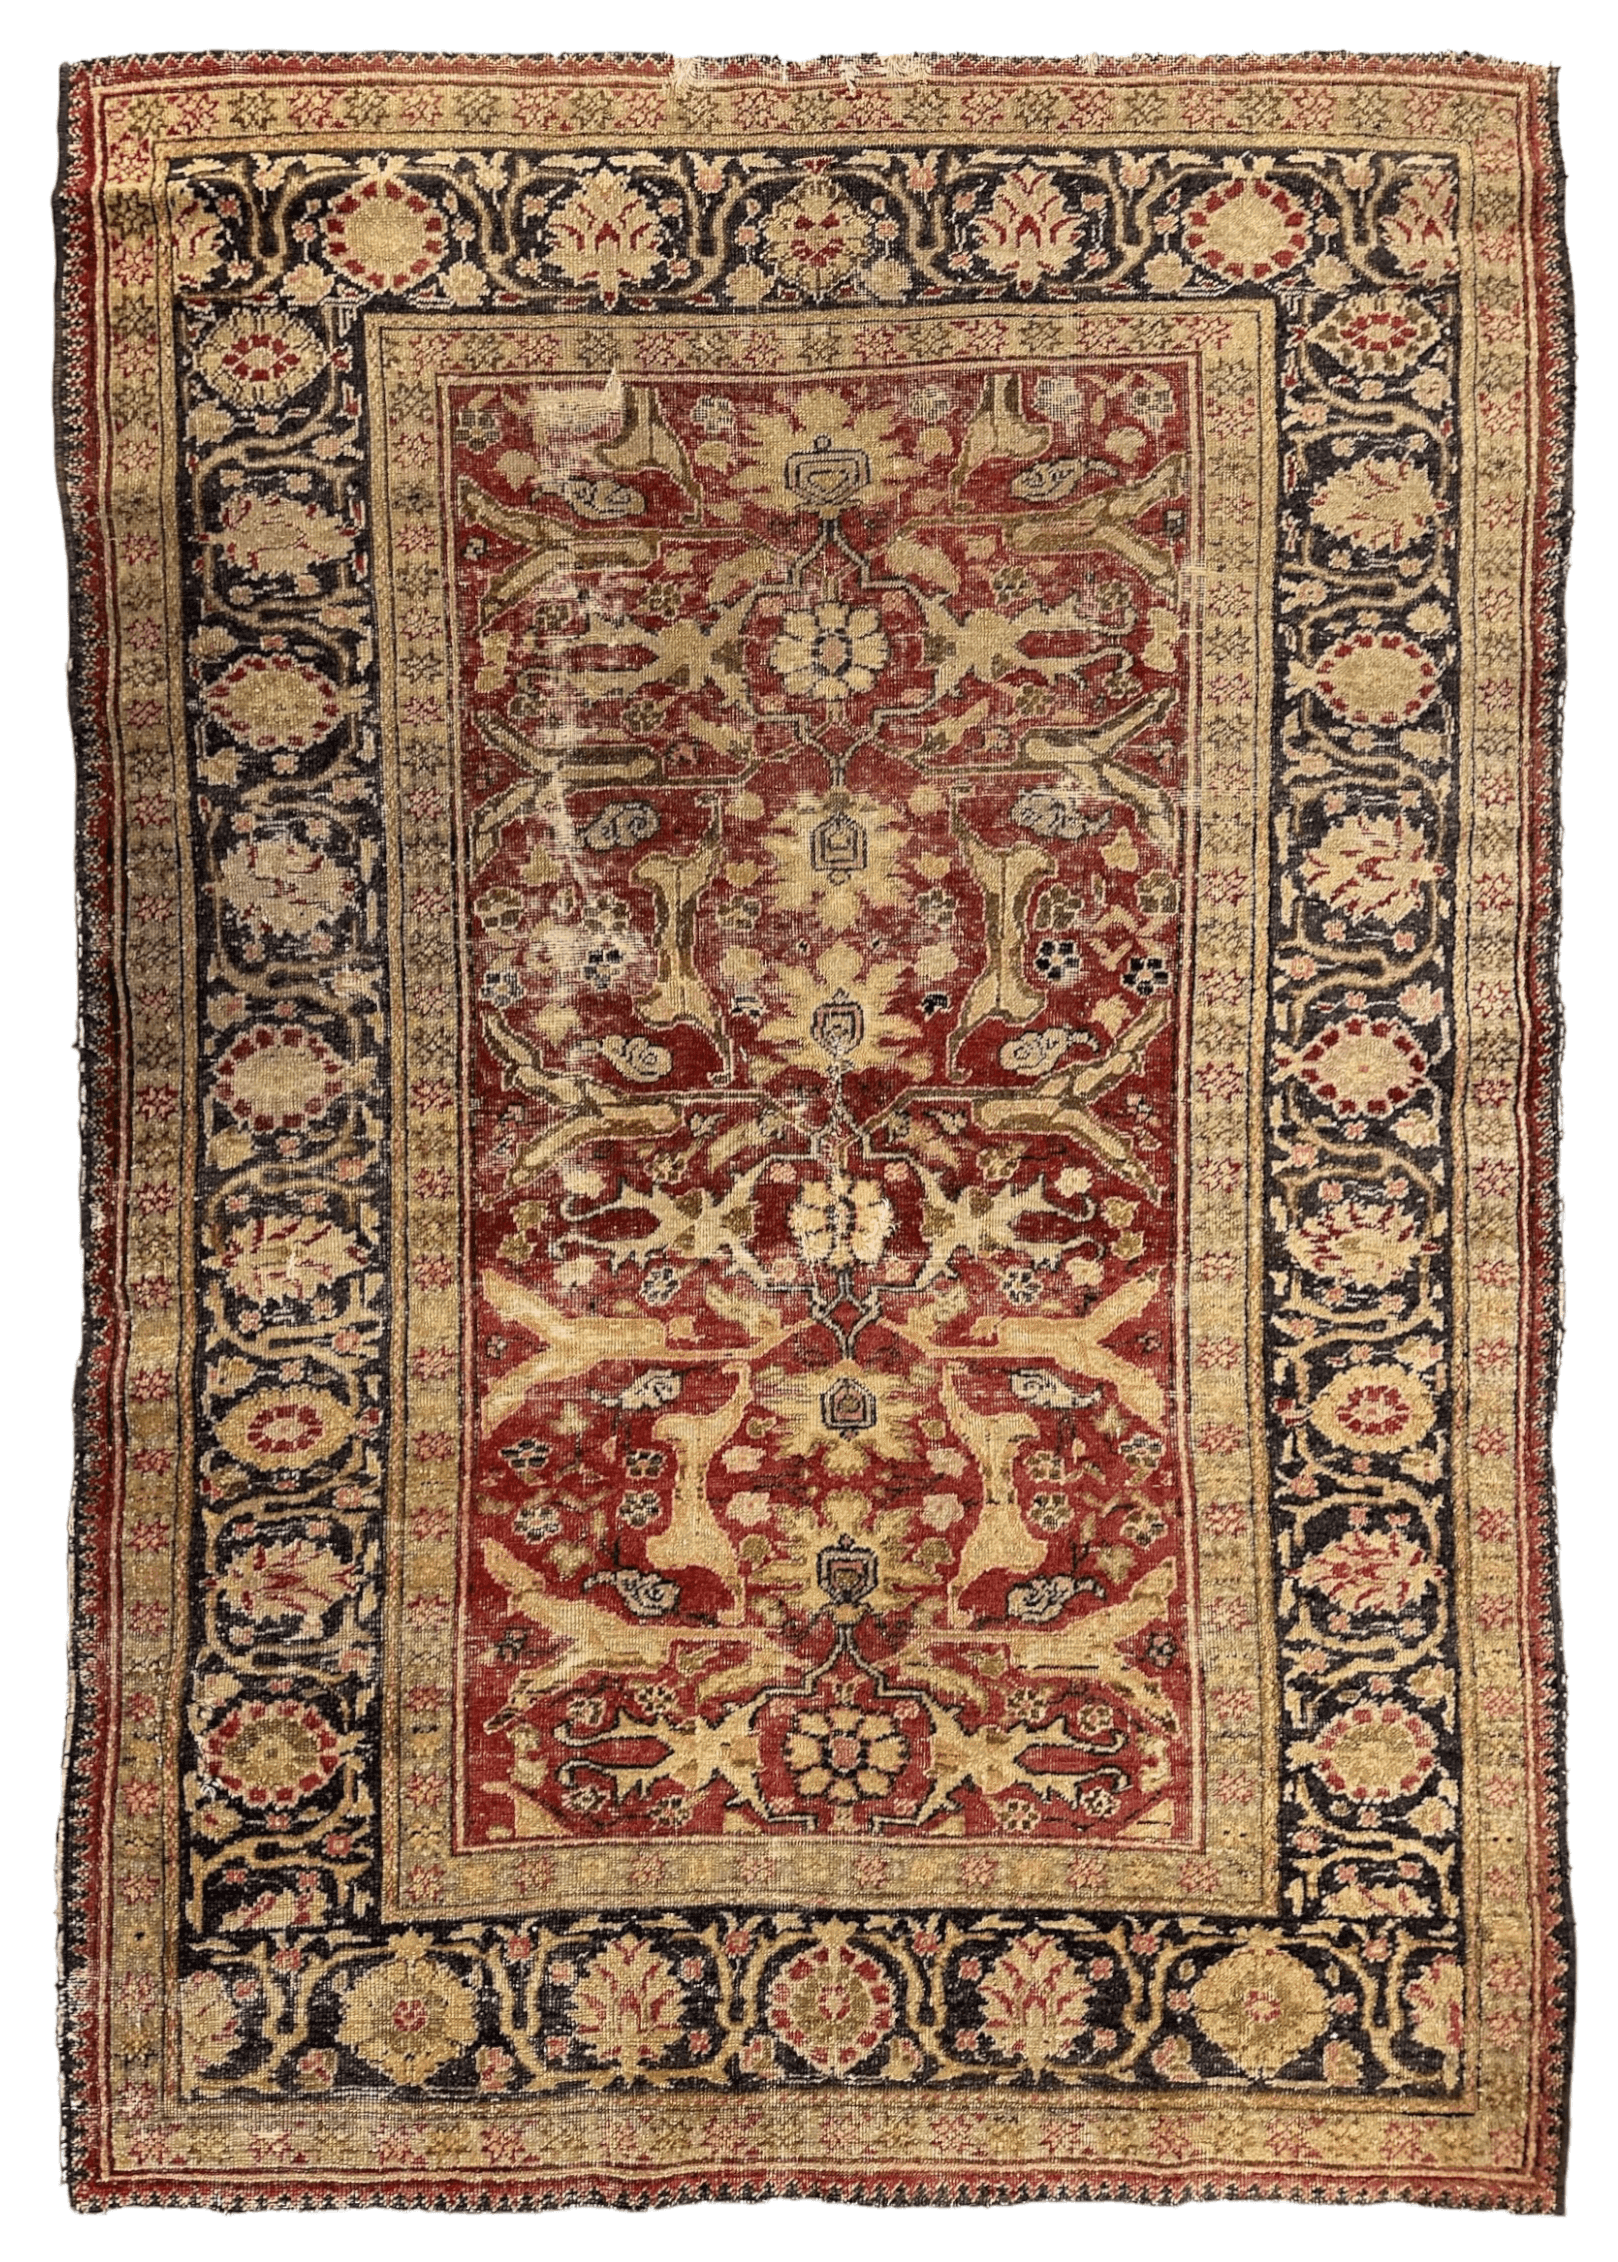 Circa 1900 Antique Persian Mahal Rug 4’5” x 6’4”